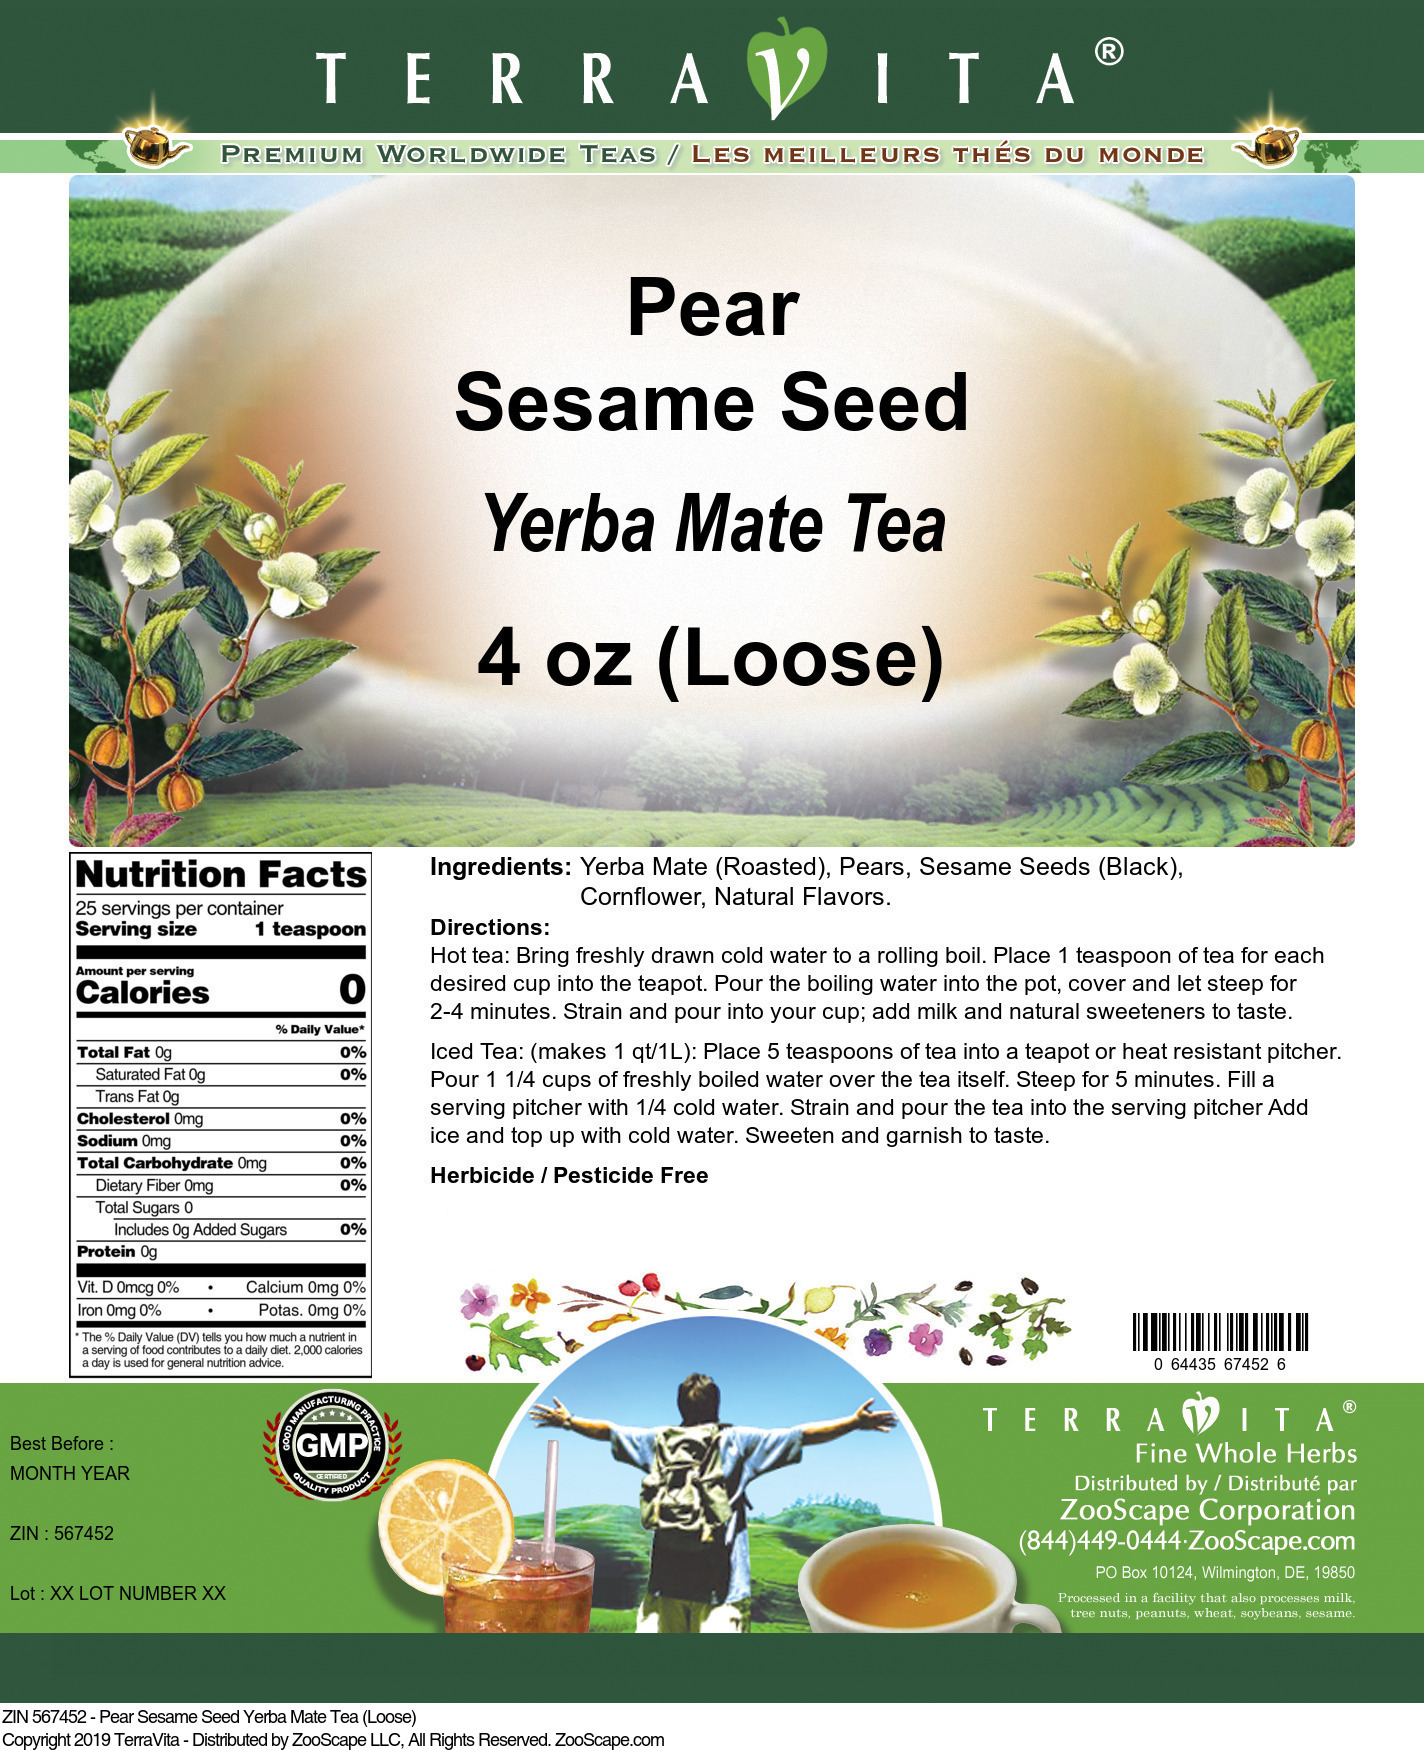 Pear Sesame Seed Yerba Mate Tea (Loose) - Label